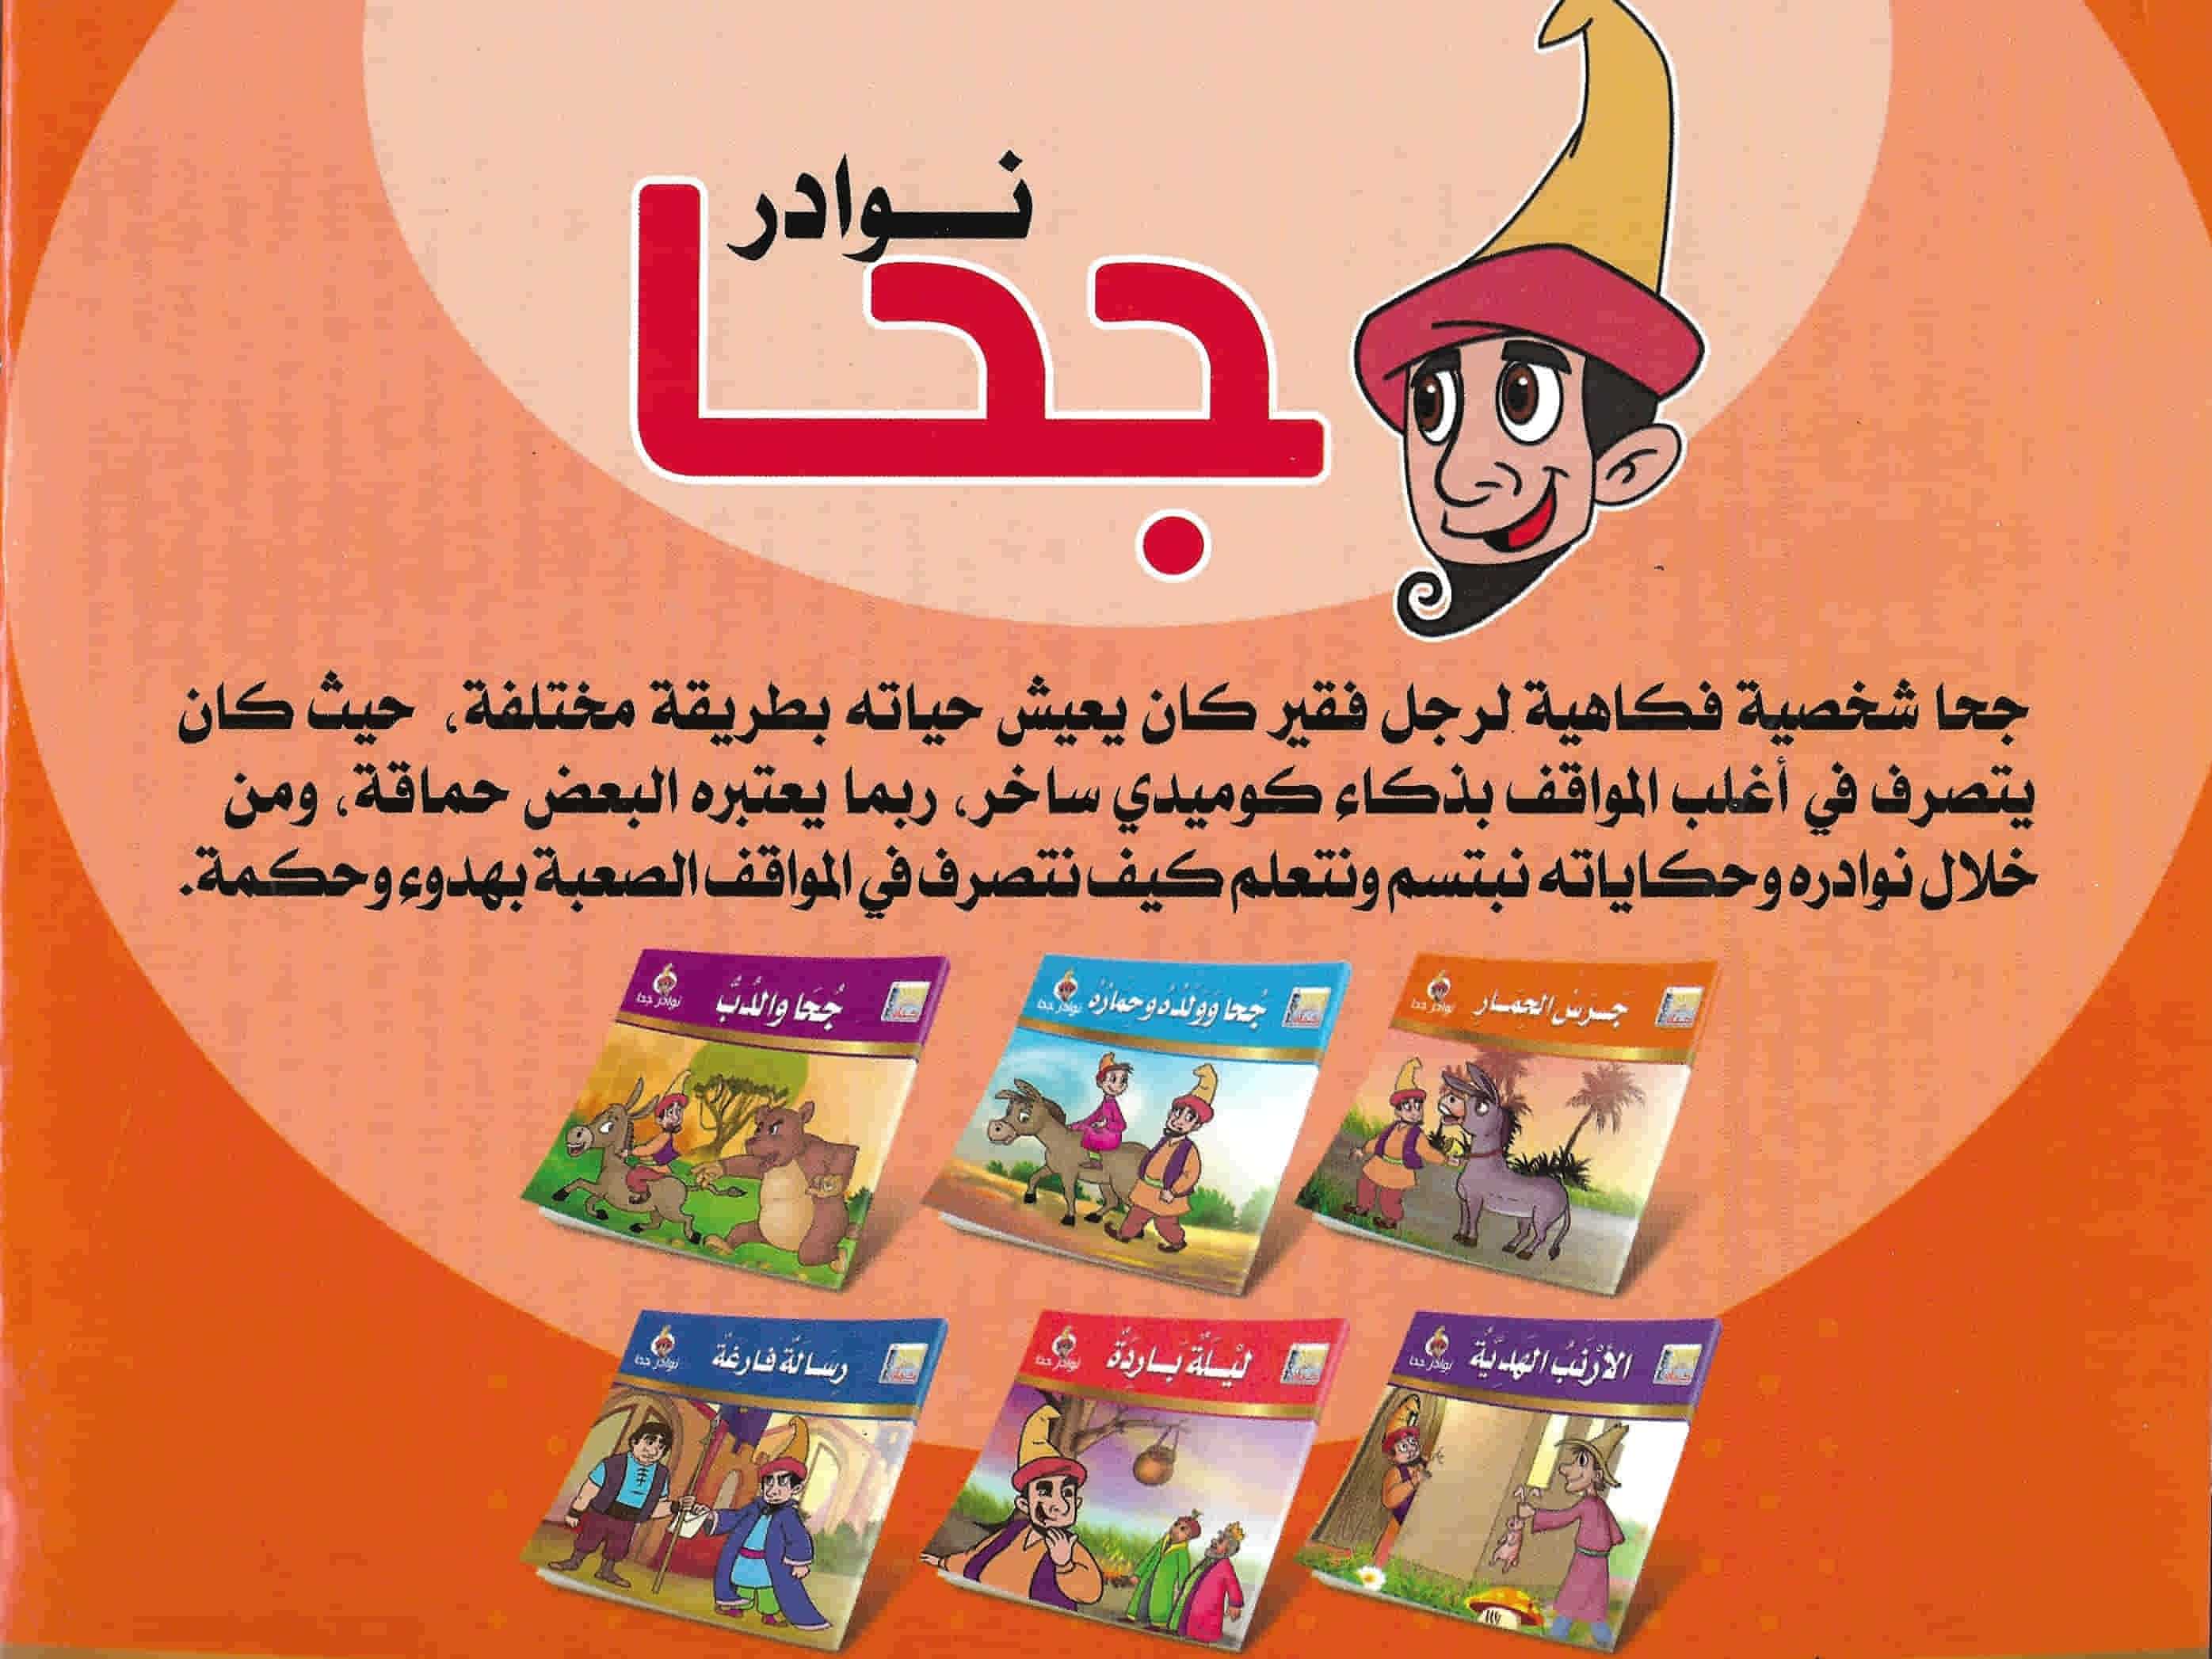 سلسلة نوادر جحا كتب أطفال كيان للنشر والتوزيع